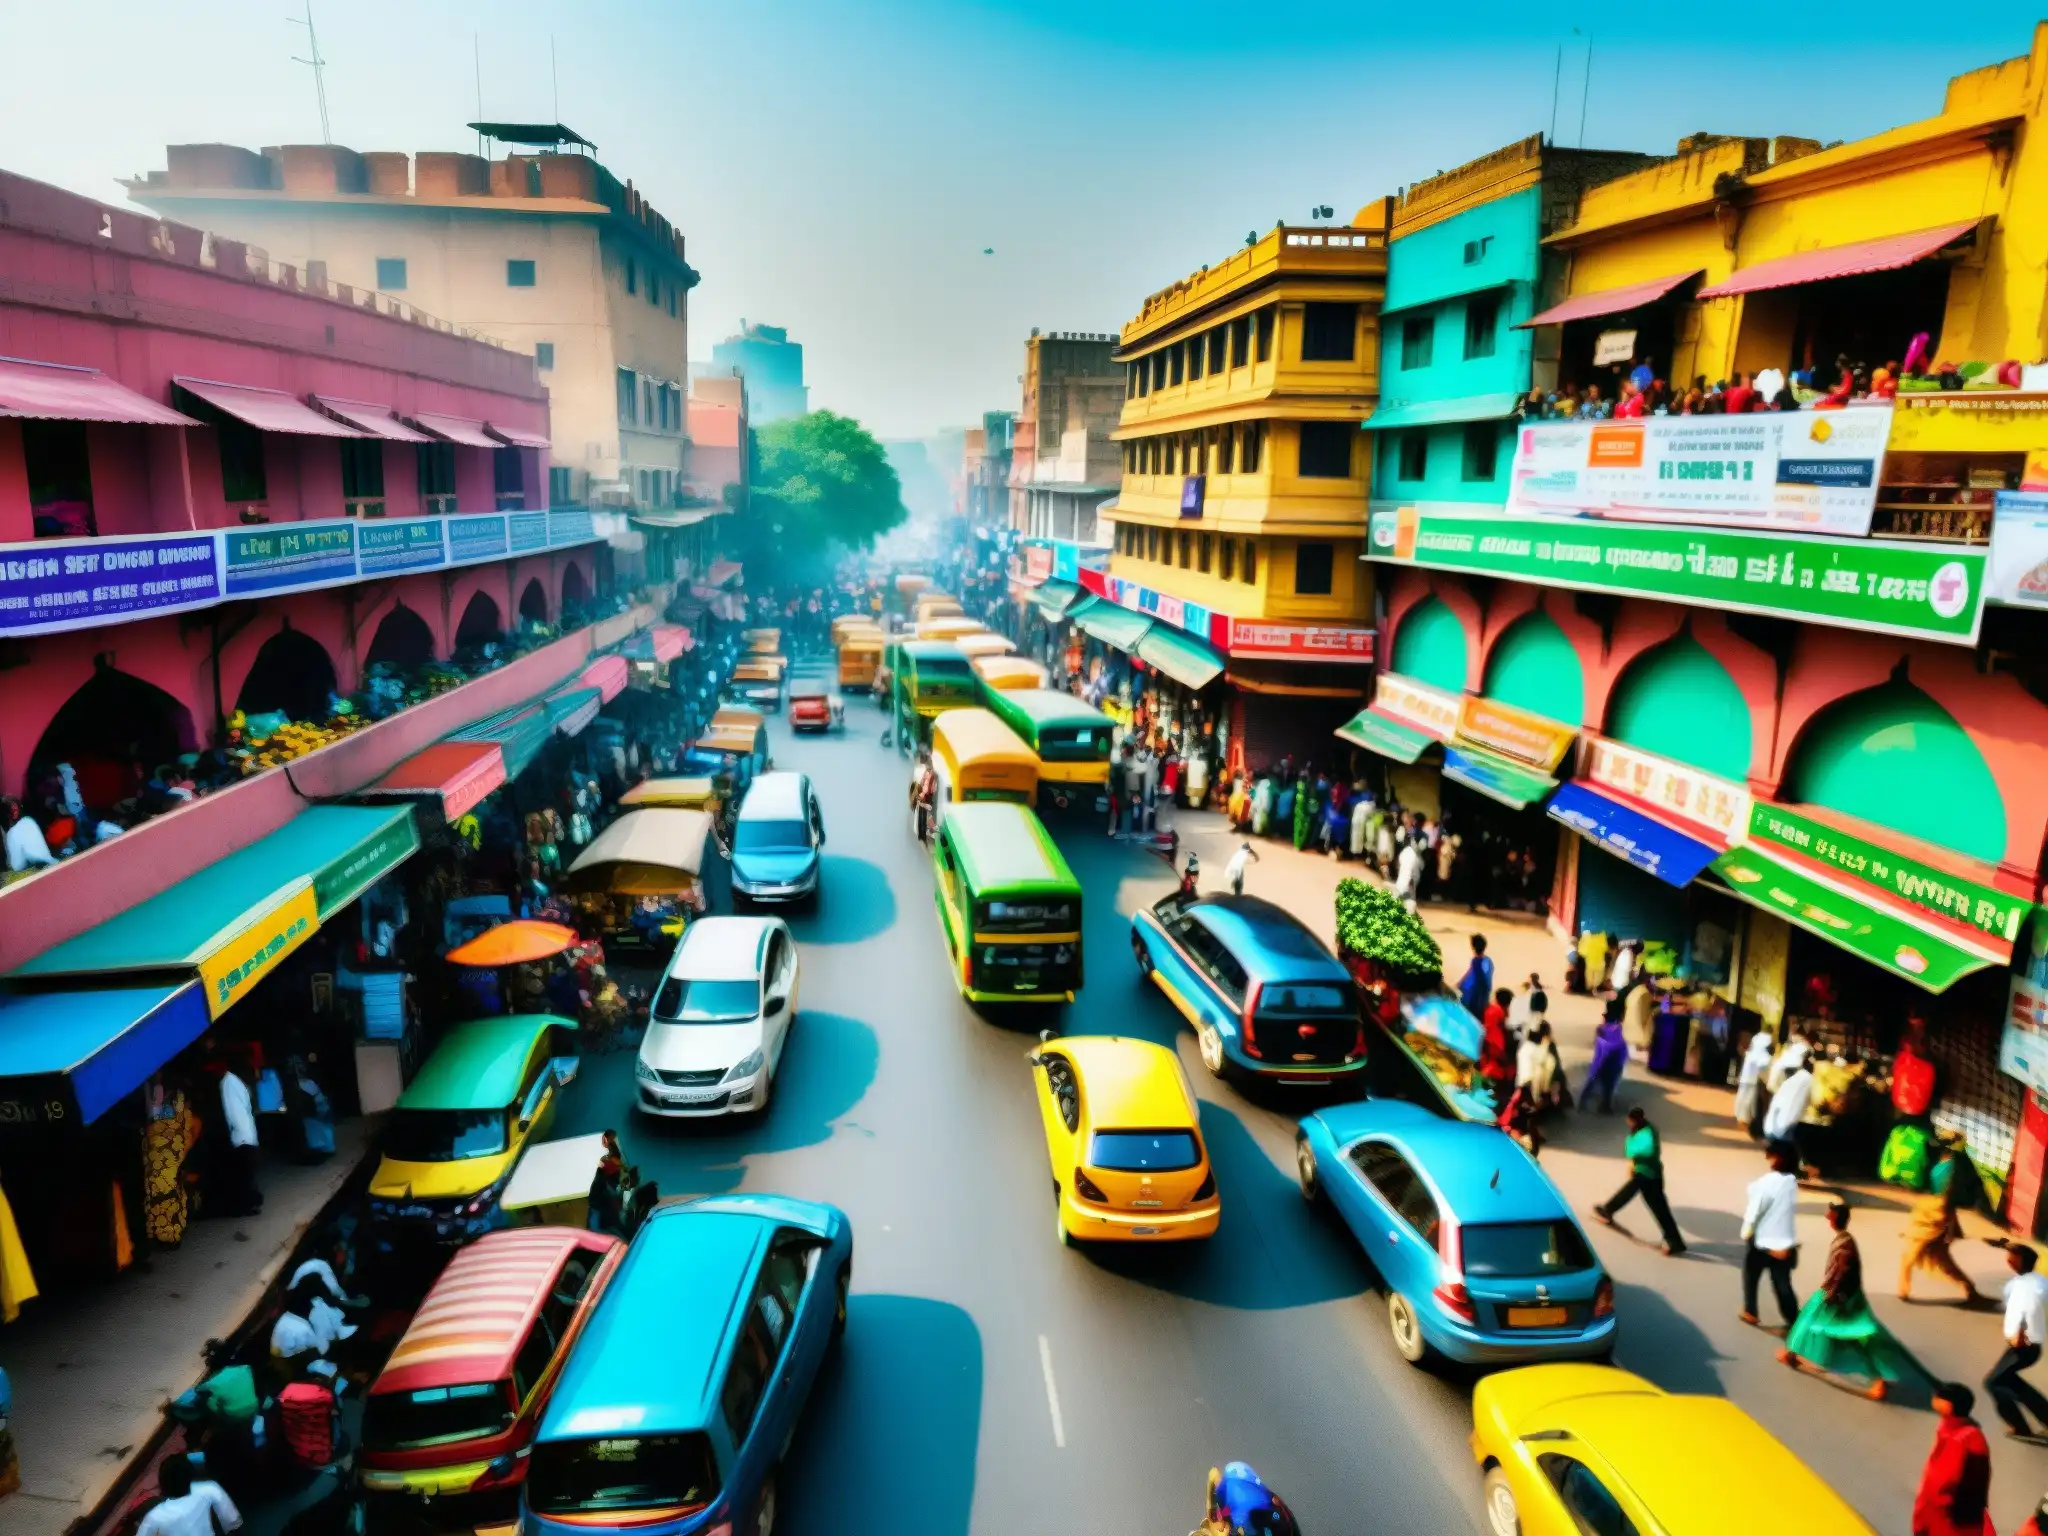 Vista bulliciosa de la vida urbana en Delhi, India, con colores vibrantes y una mezcla de arquitectura tradicional y moderna